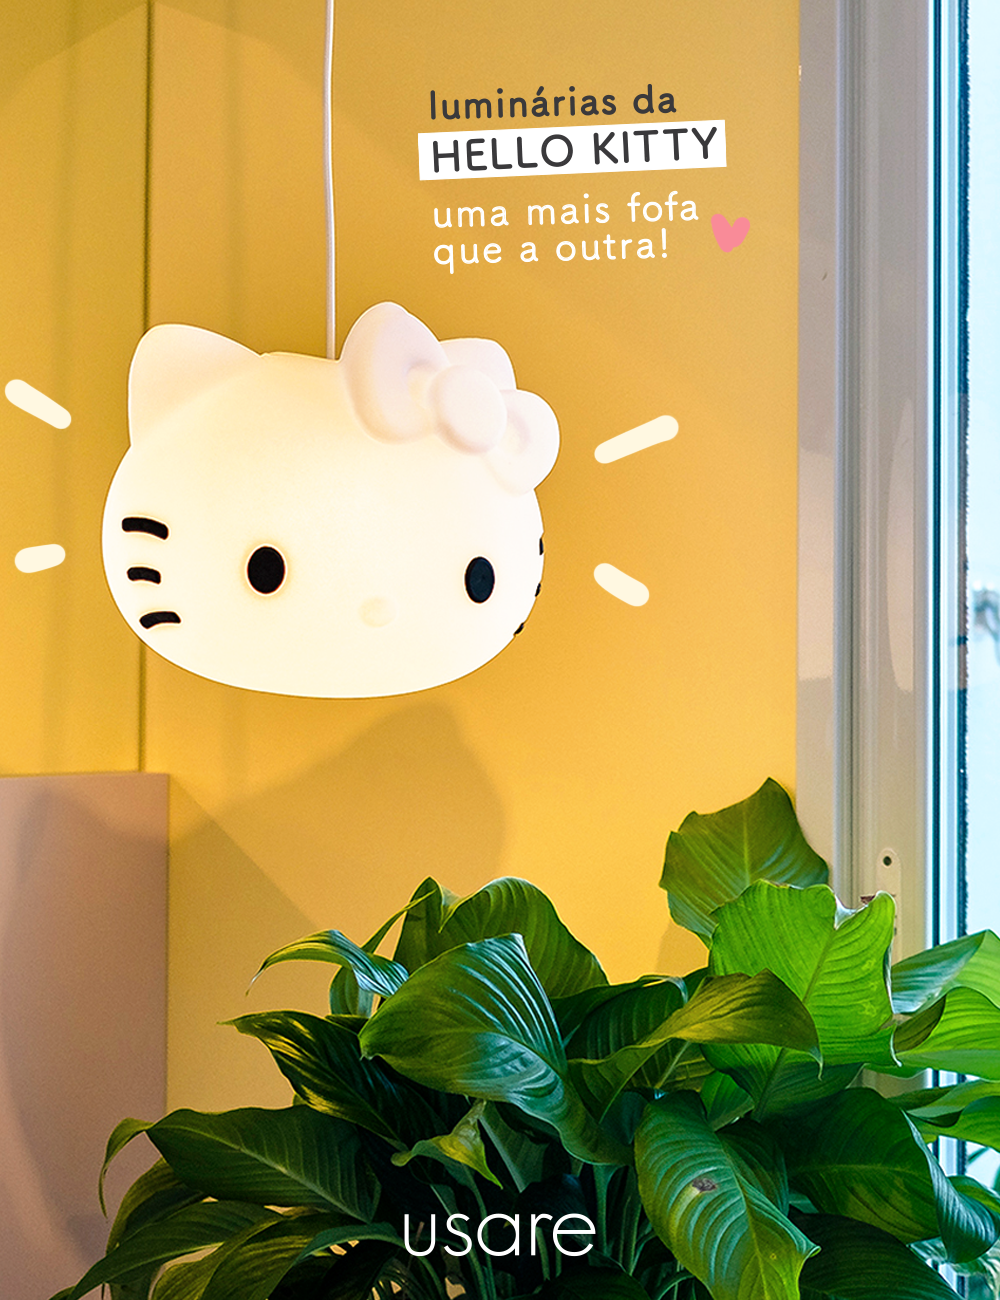 Luminárias Hello Kitty Usare